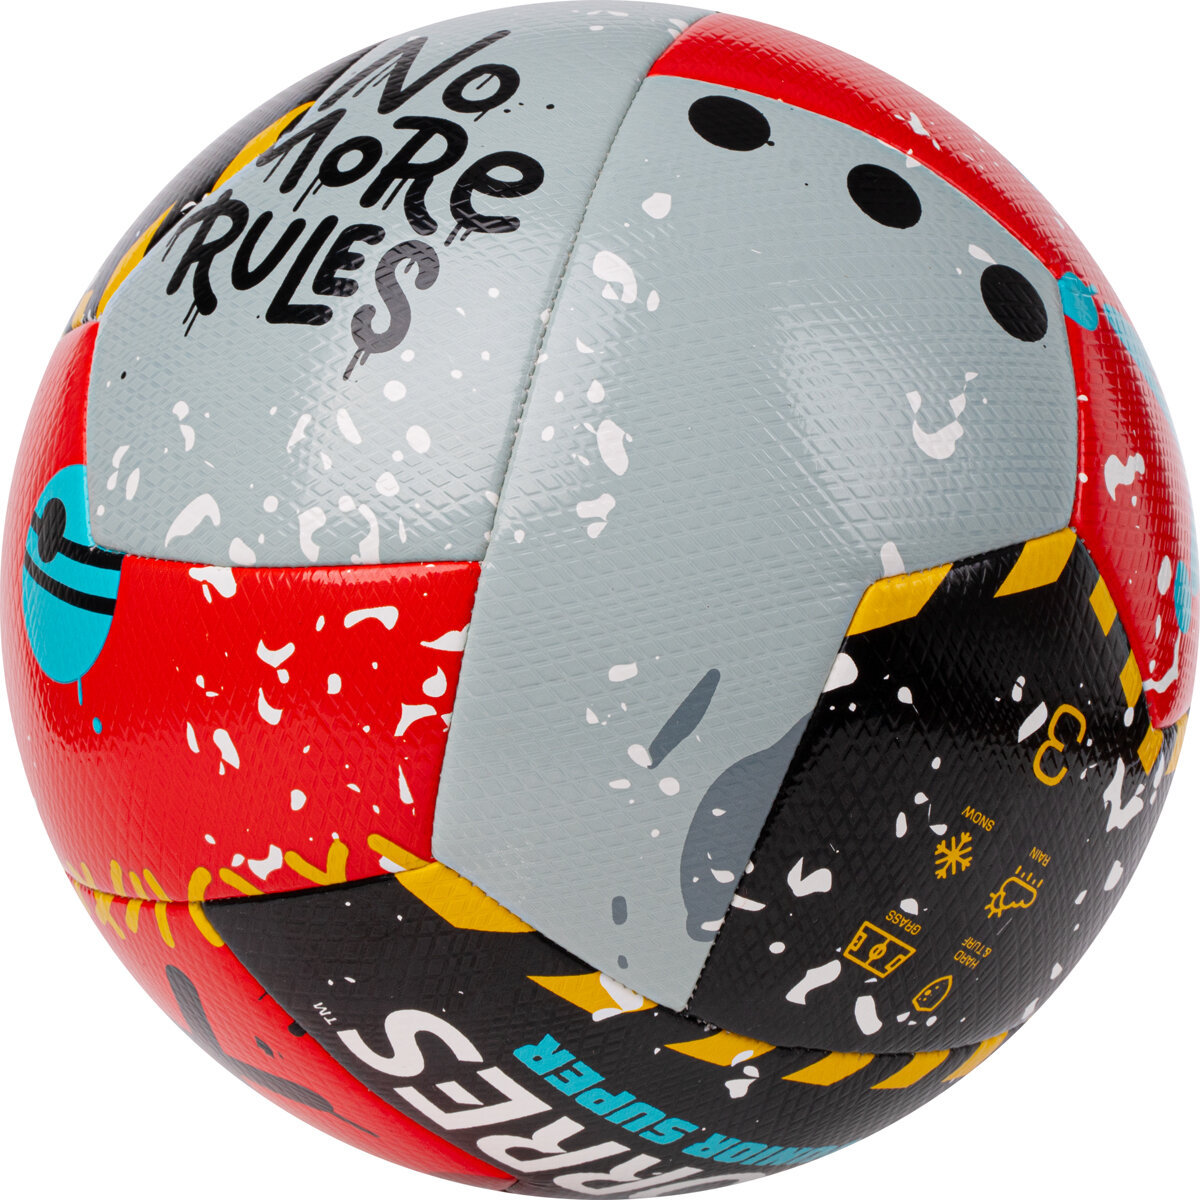 Мяч футбольный TORRES Junior-3 Super NEW гибридный, размер 3 (5-8 лет) поставляется накаченным